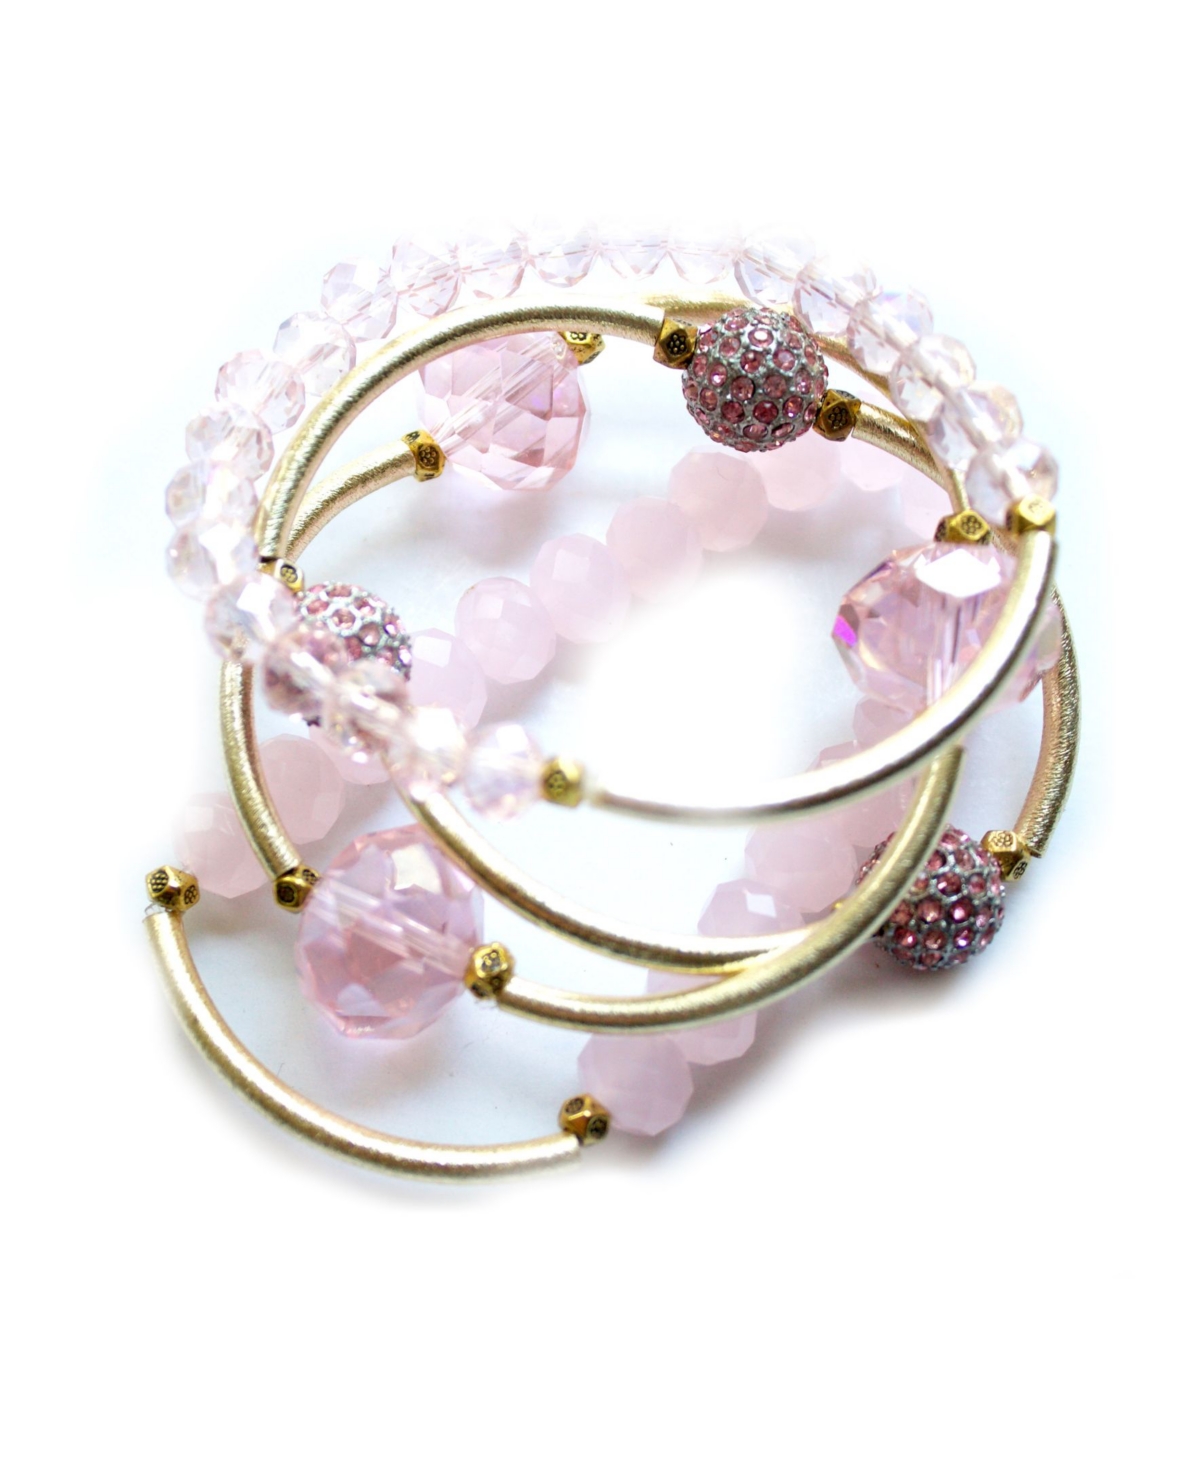 Michael Gabriel Designs Women's Paradise Bracelet Set, 5 Pieces